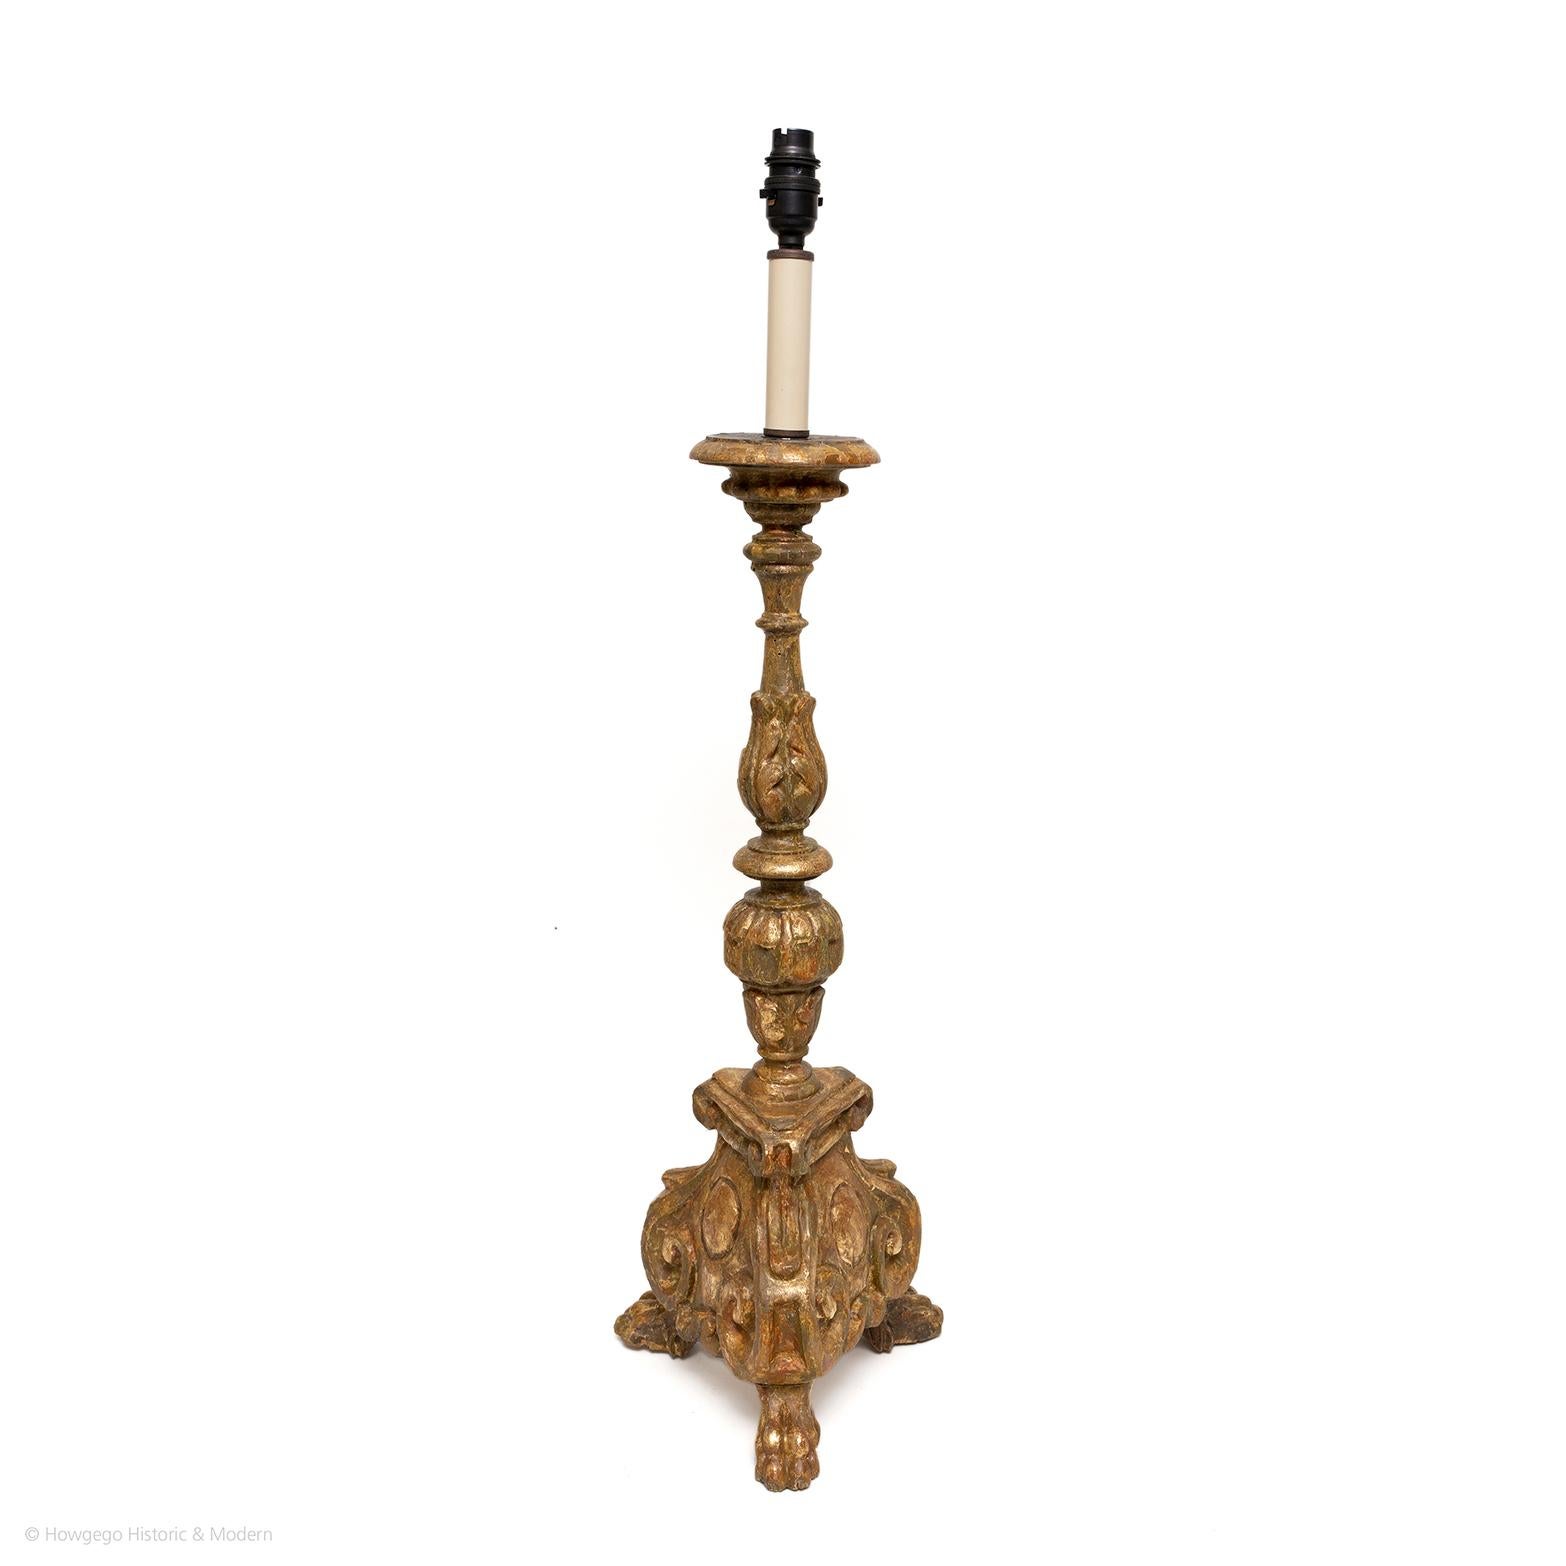 Tischlampe Kerzenleuchter Vergoldet 18. Jahrhundert Barock Italienisch 81cm 32